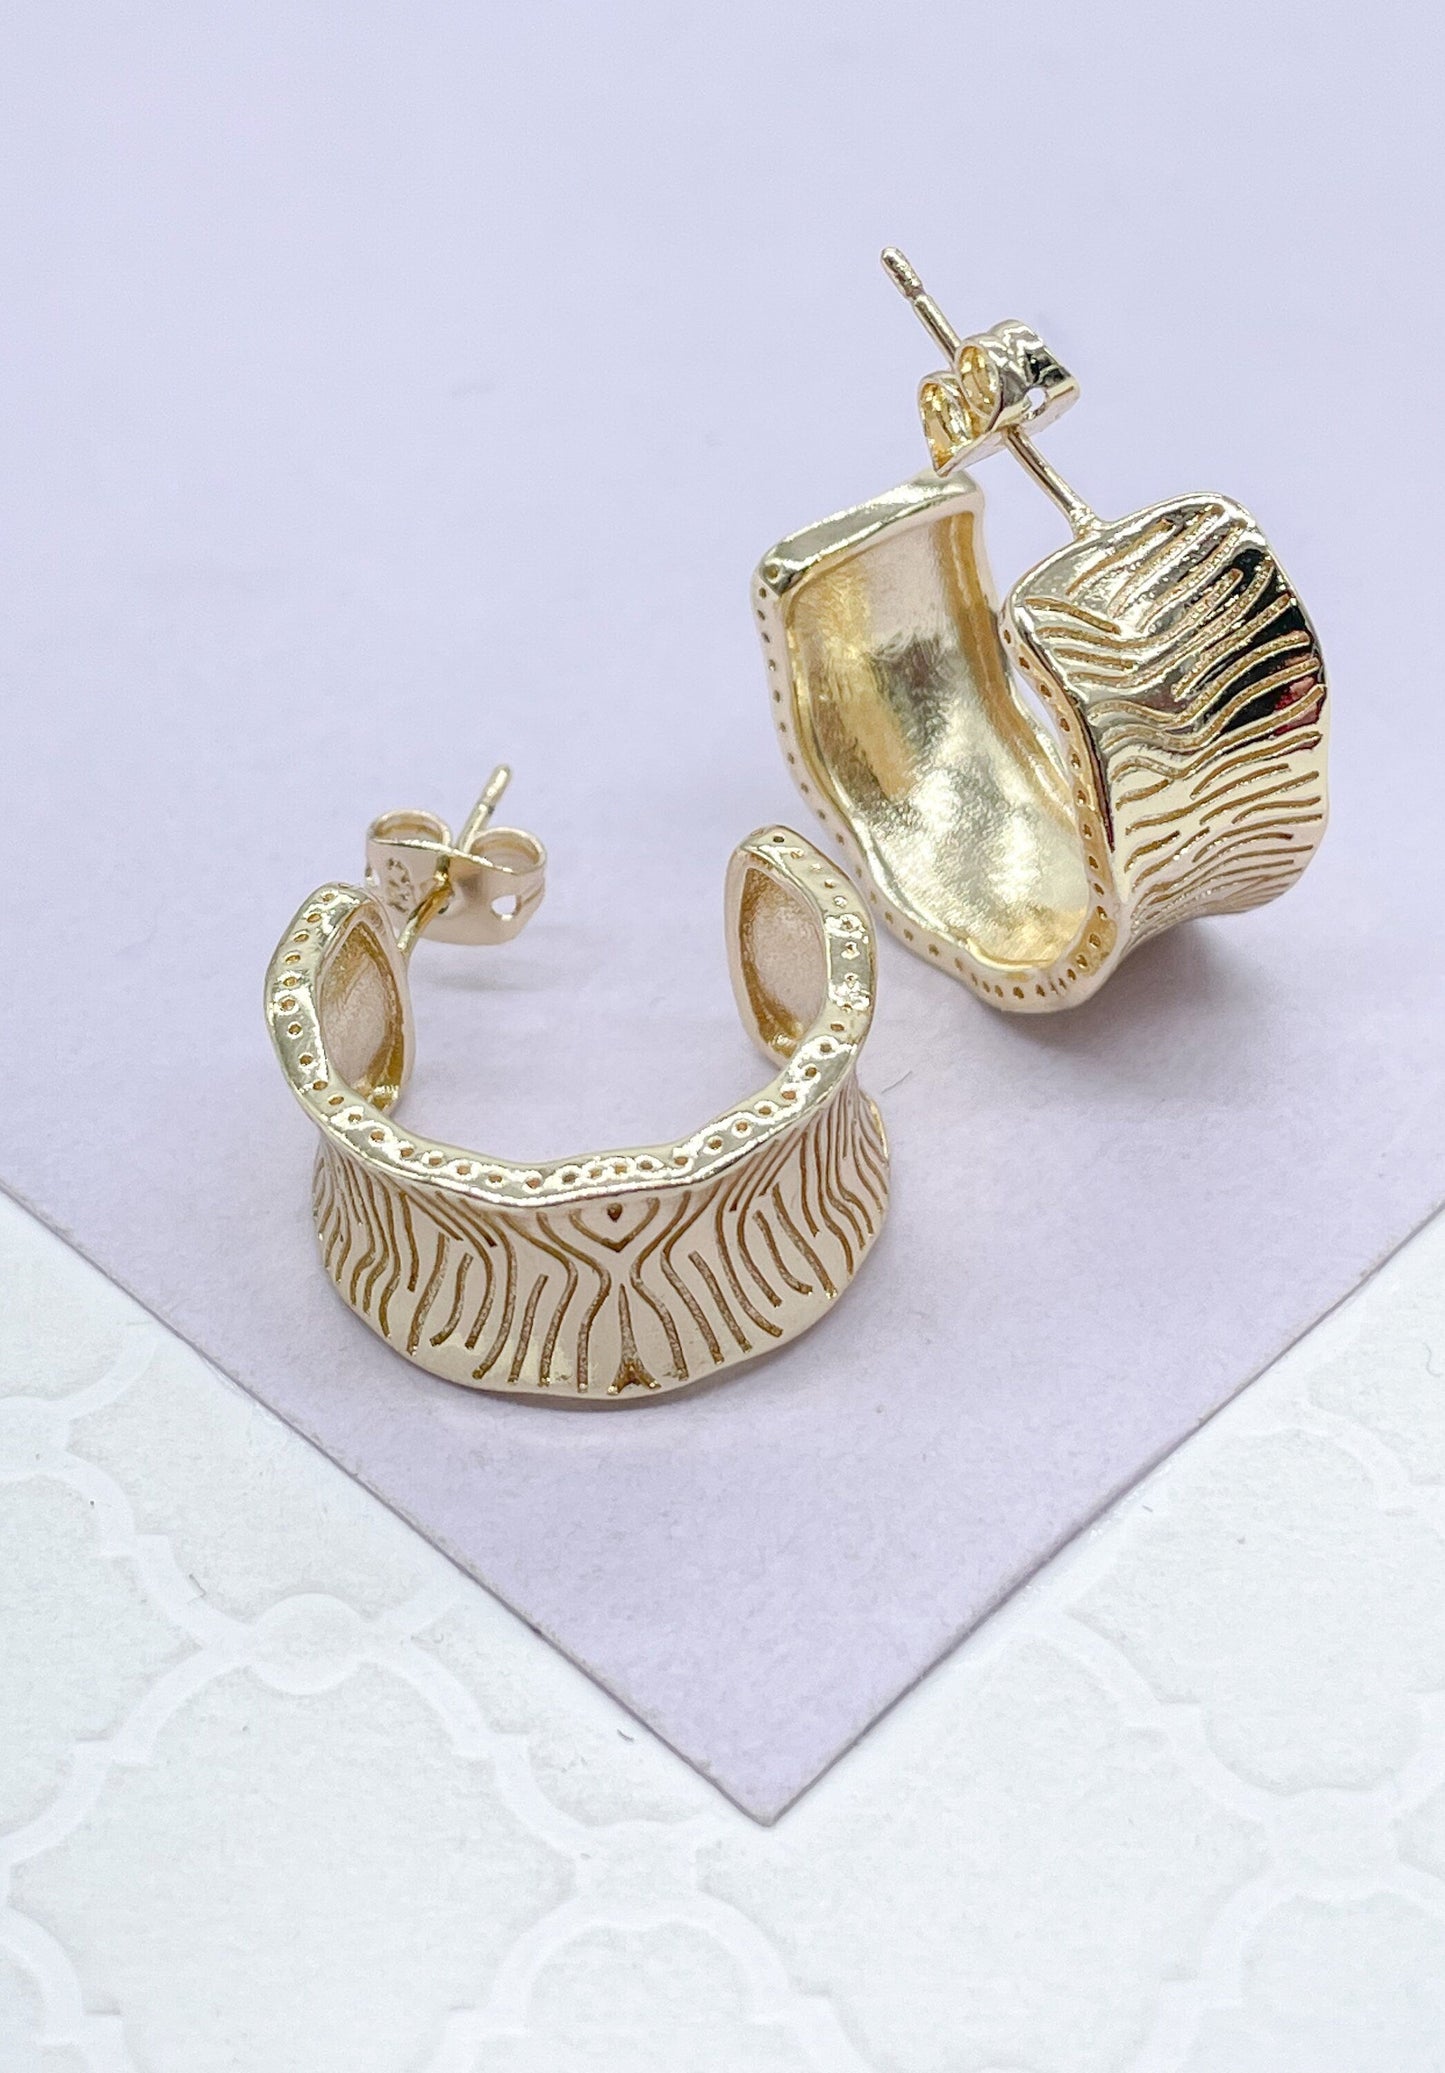 18k Gold Filled Wide Tree Trunk Patterned Open Hoop Earrings